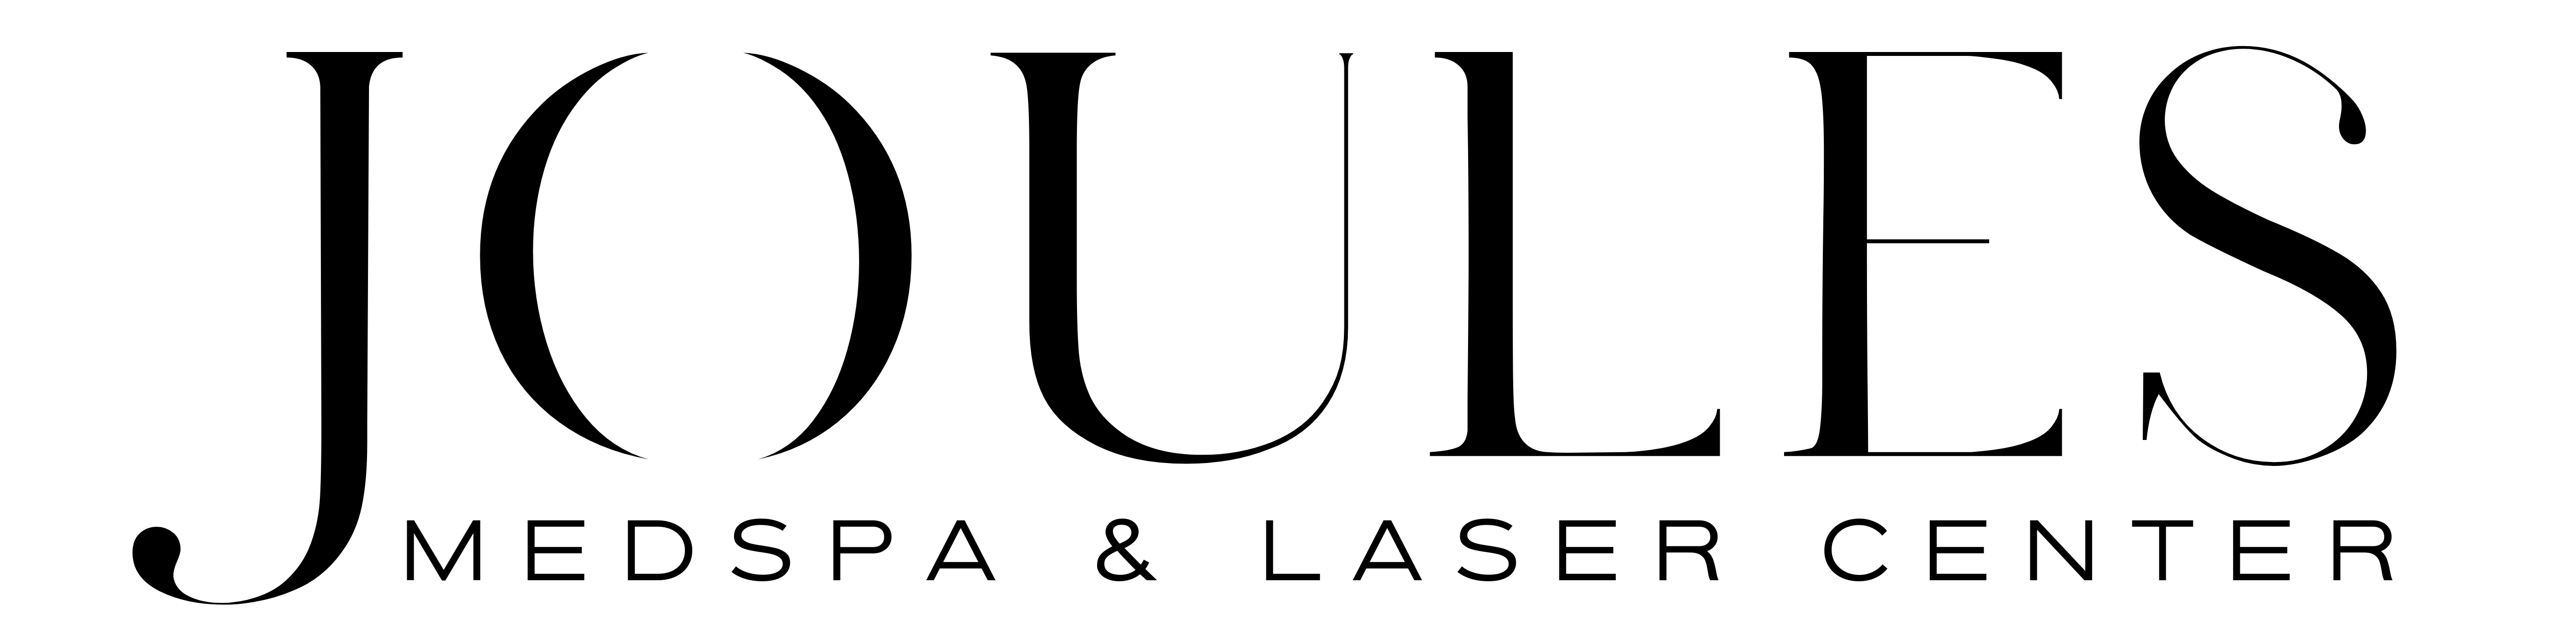 Joules Medspa & Laser Center: Apple Valley, MN